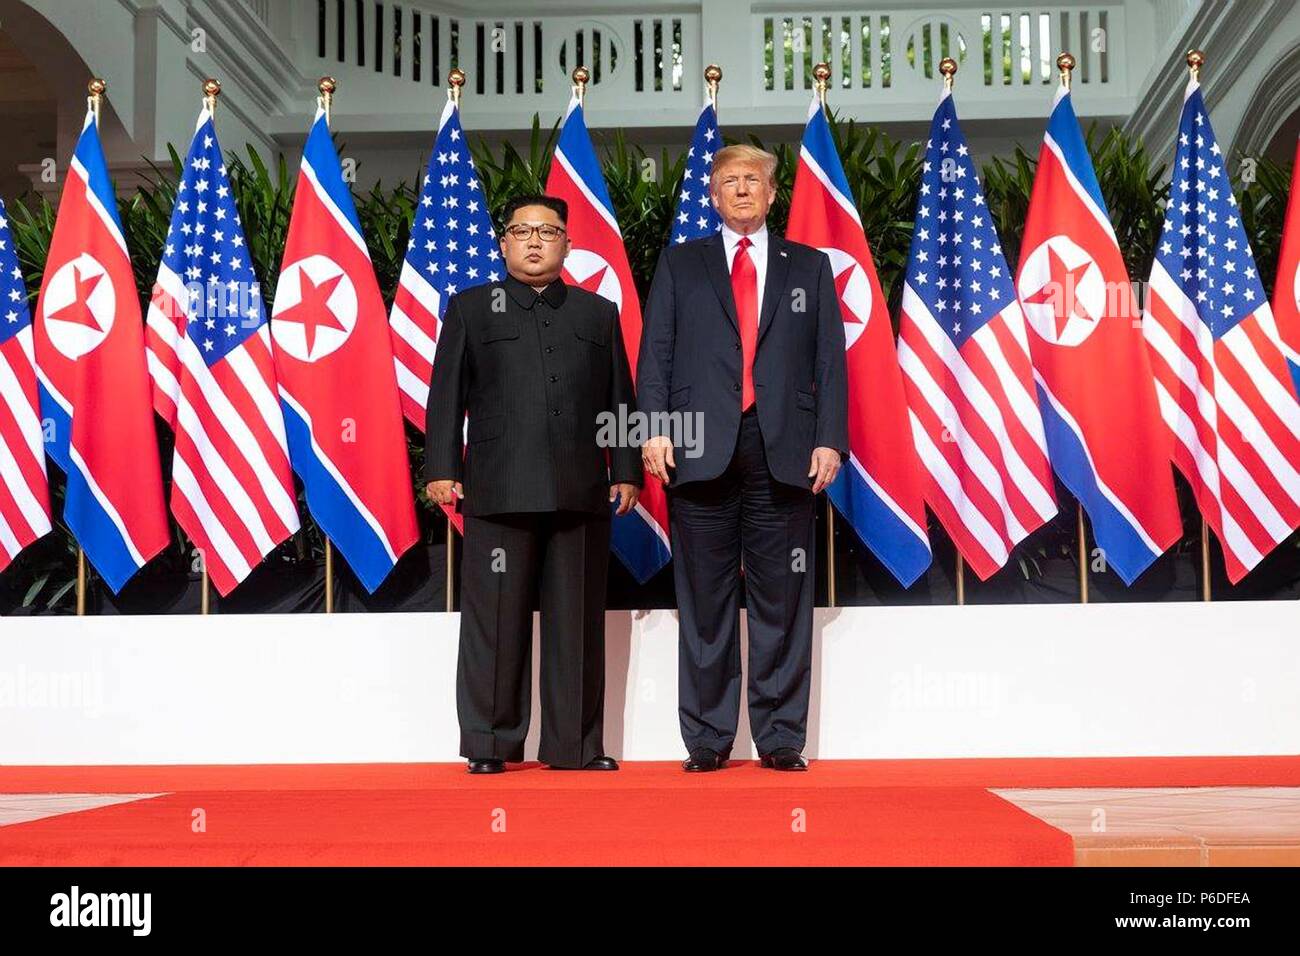 Us-Präsident Donald Trump, rechts, steht mit dem nordkoreanischen Führer Kim Jong Un während ihrer historischen Gipfel an der Capella resort Juni 12, 2018 in Insel Sentosa, Singapur. Stockfoto